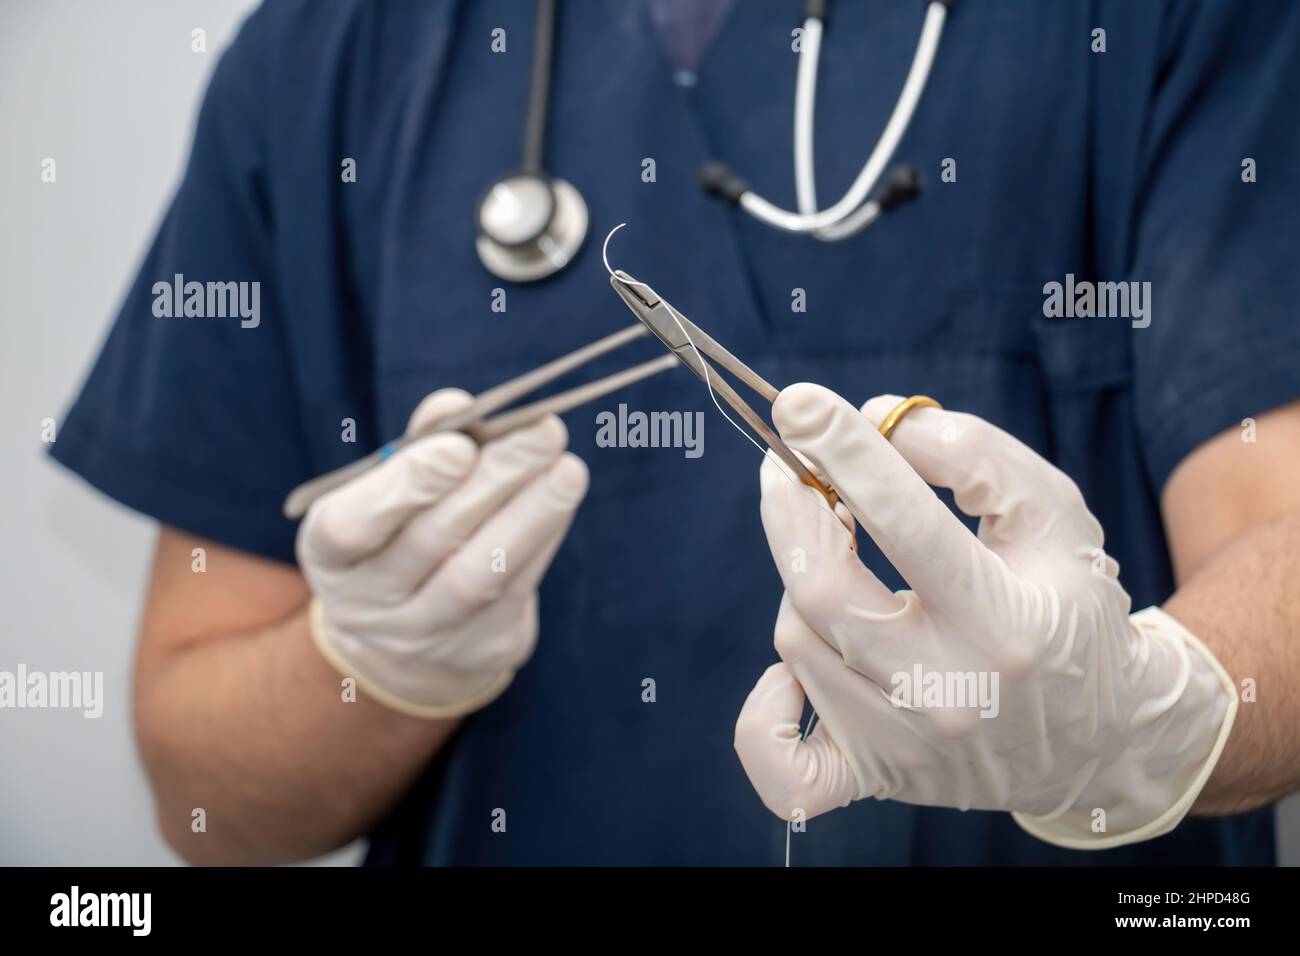 Arzt in medizinischen Uniform hält, in der Hand mit Einweg-Handschuh, chirurgisches Instrument, Nadelhalter und Nahtfaden. Verwischen Sie den Arzt mit der Zeps und Stockfoto